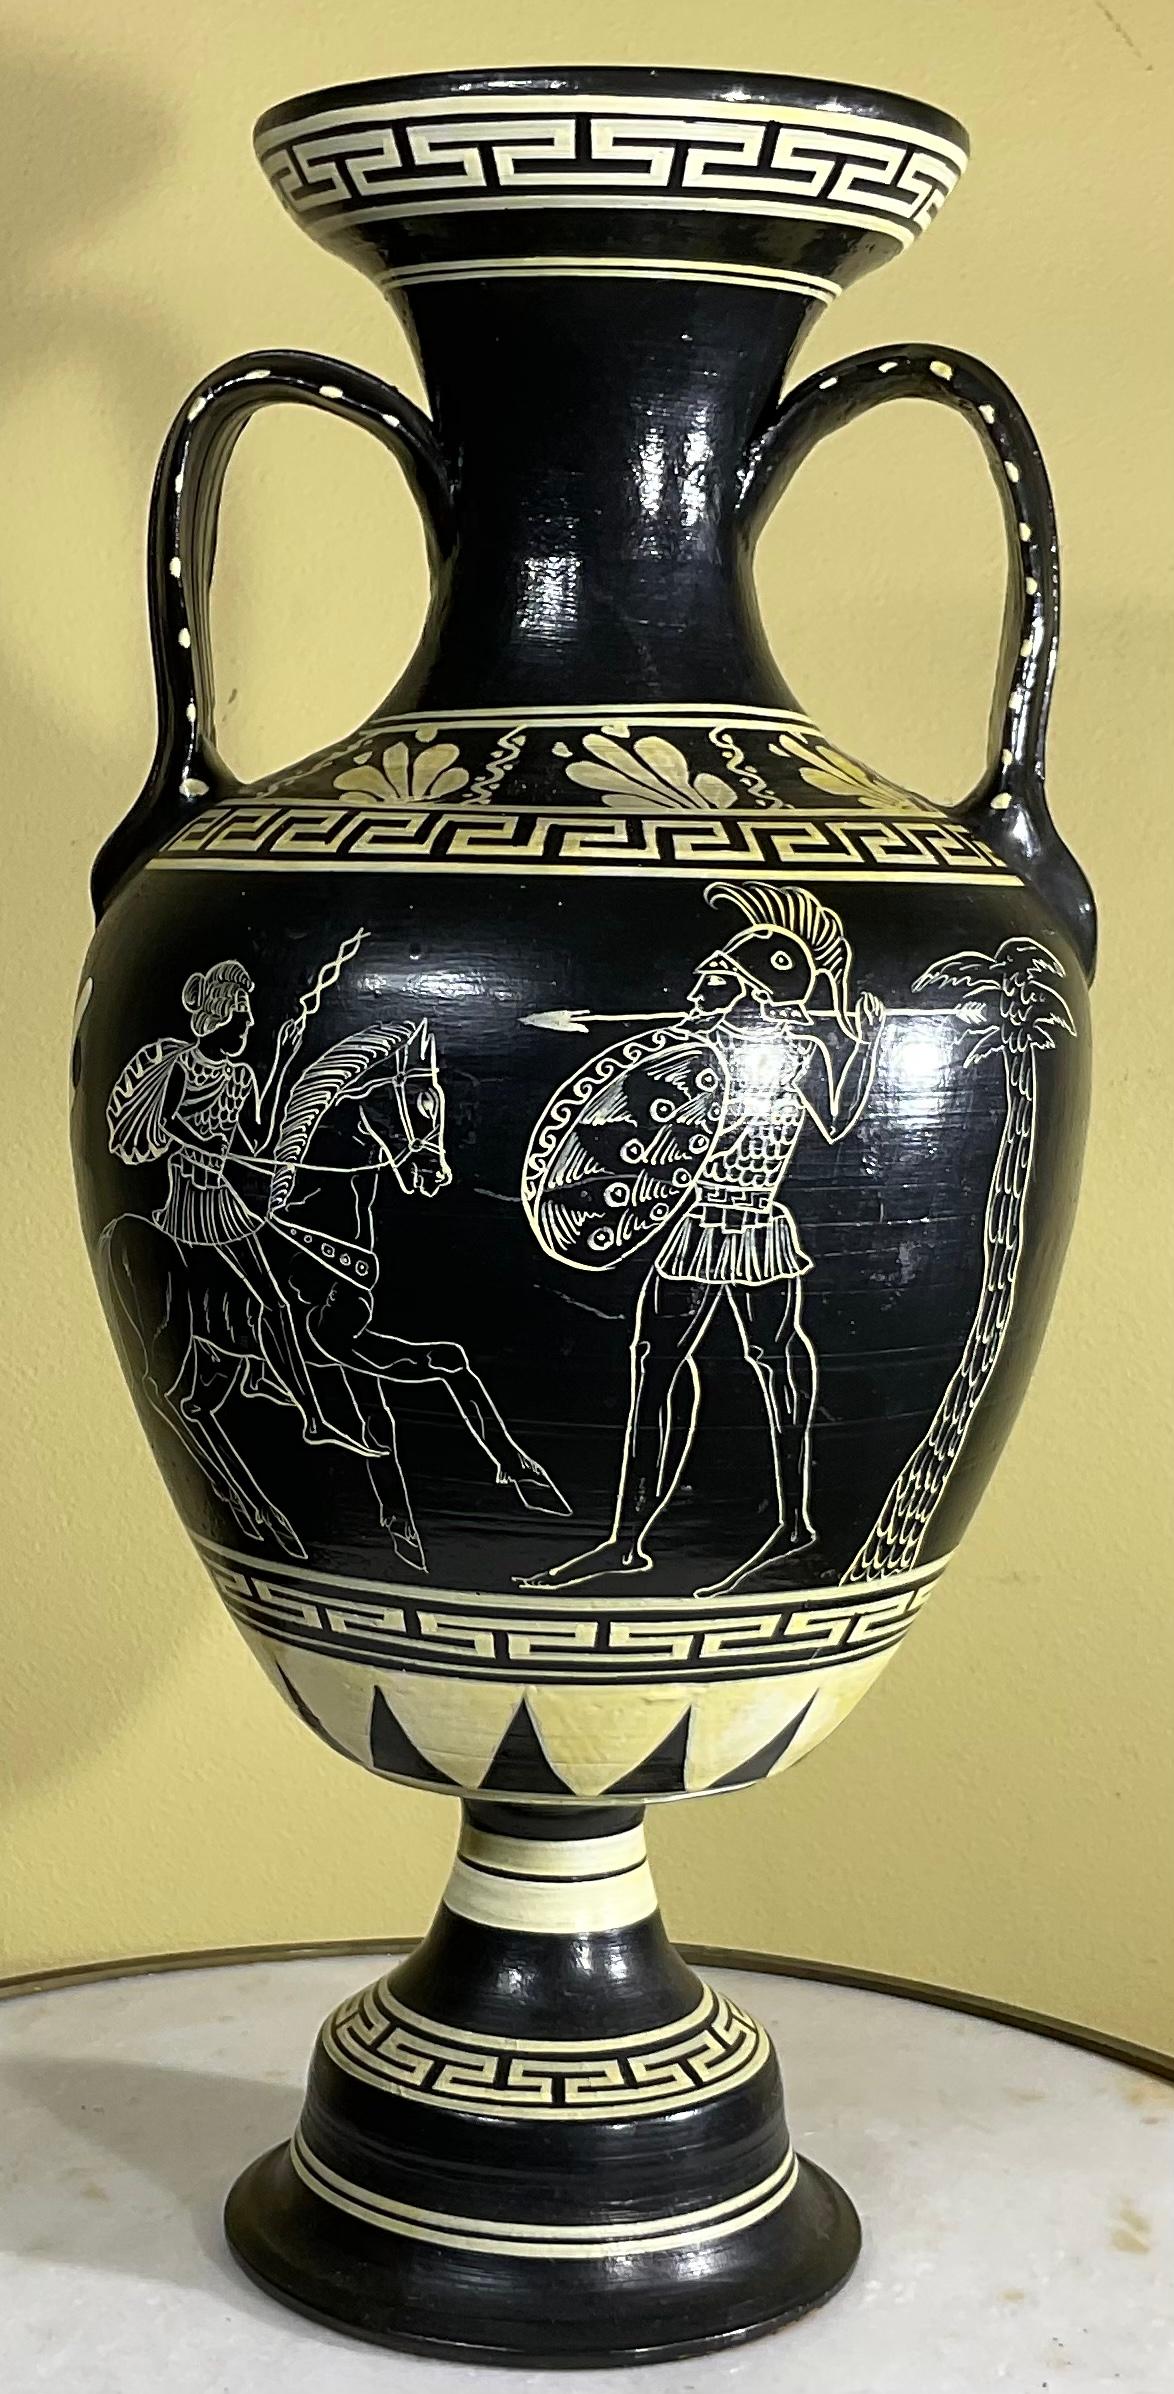 
Vase en terre cuite de l'Attique, datant du milieu du 20e siècle et fabriqué à la main, présentant des scènes grecques classiques peintes à la main, décorées sur tout le pourtour d'un motif de clé grecque en forme de cercle. Un grand objet d'art à